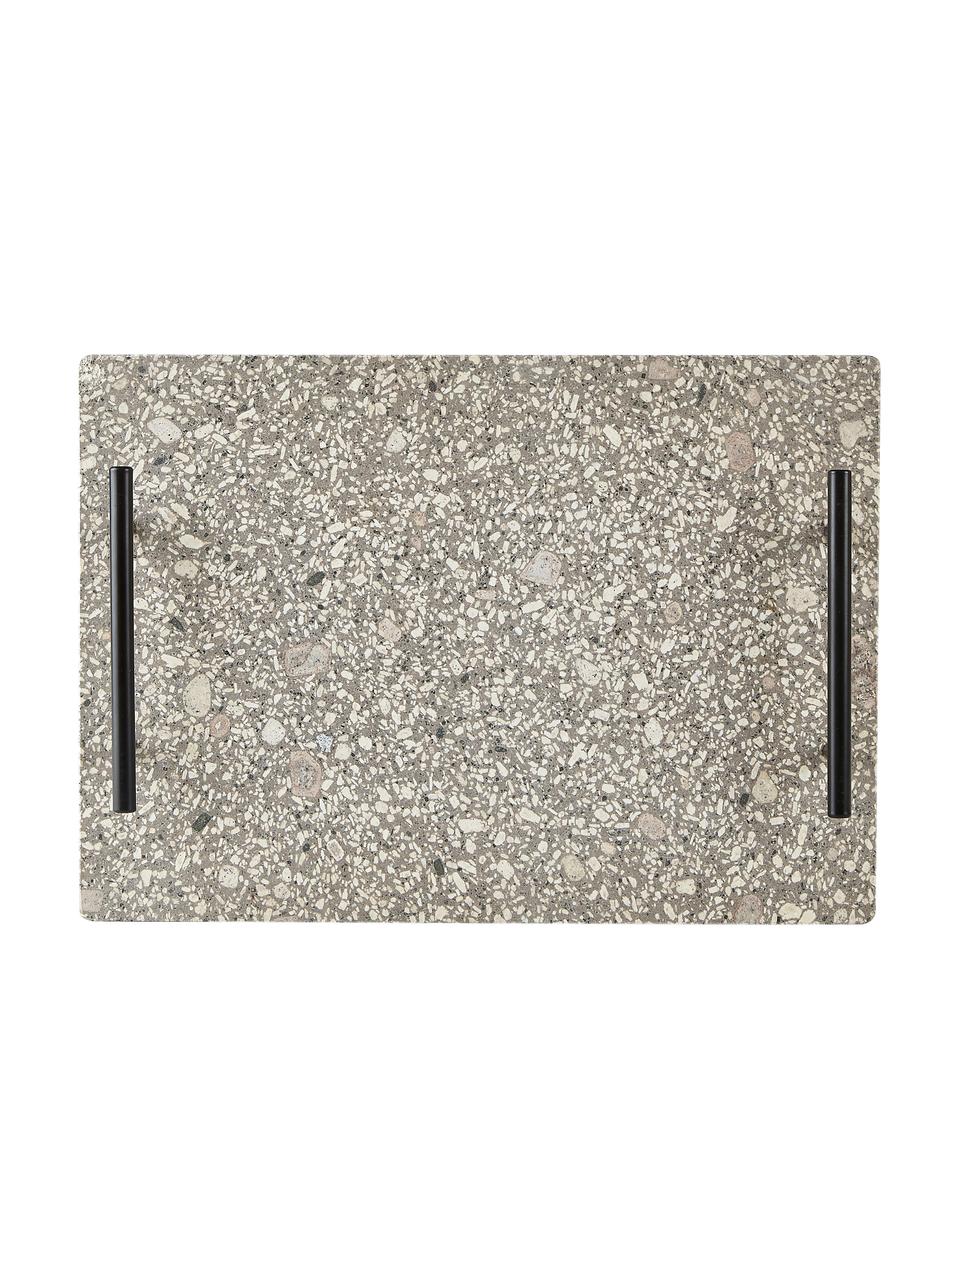 Serviertablett Stone aus Steingut mit Griff, L 35 x B 25 cm, Steingut, Grau, Schwarz, L 35 x B 25 cm